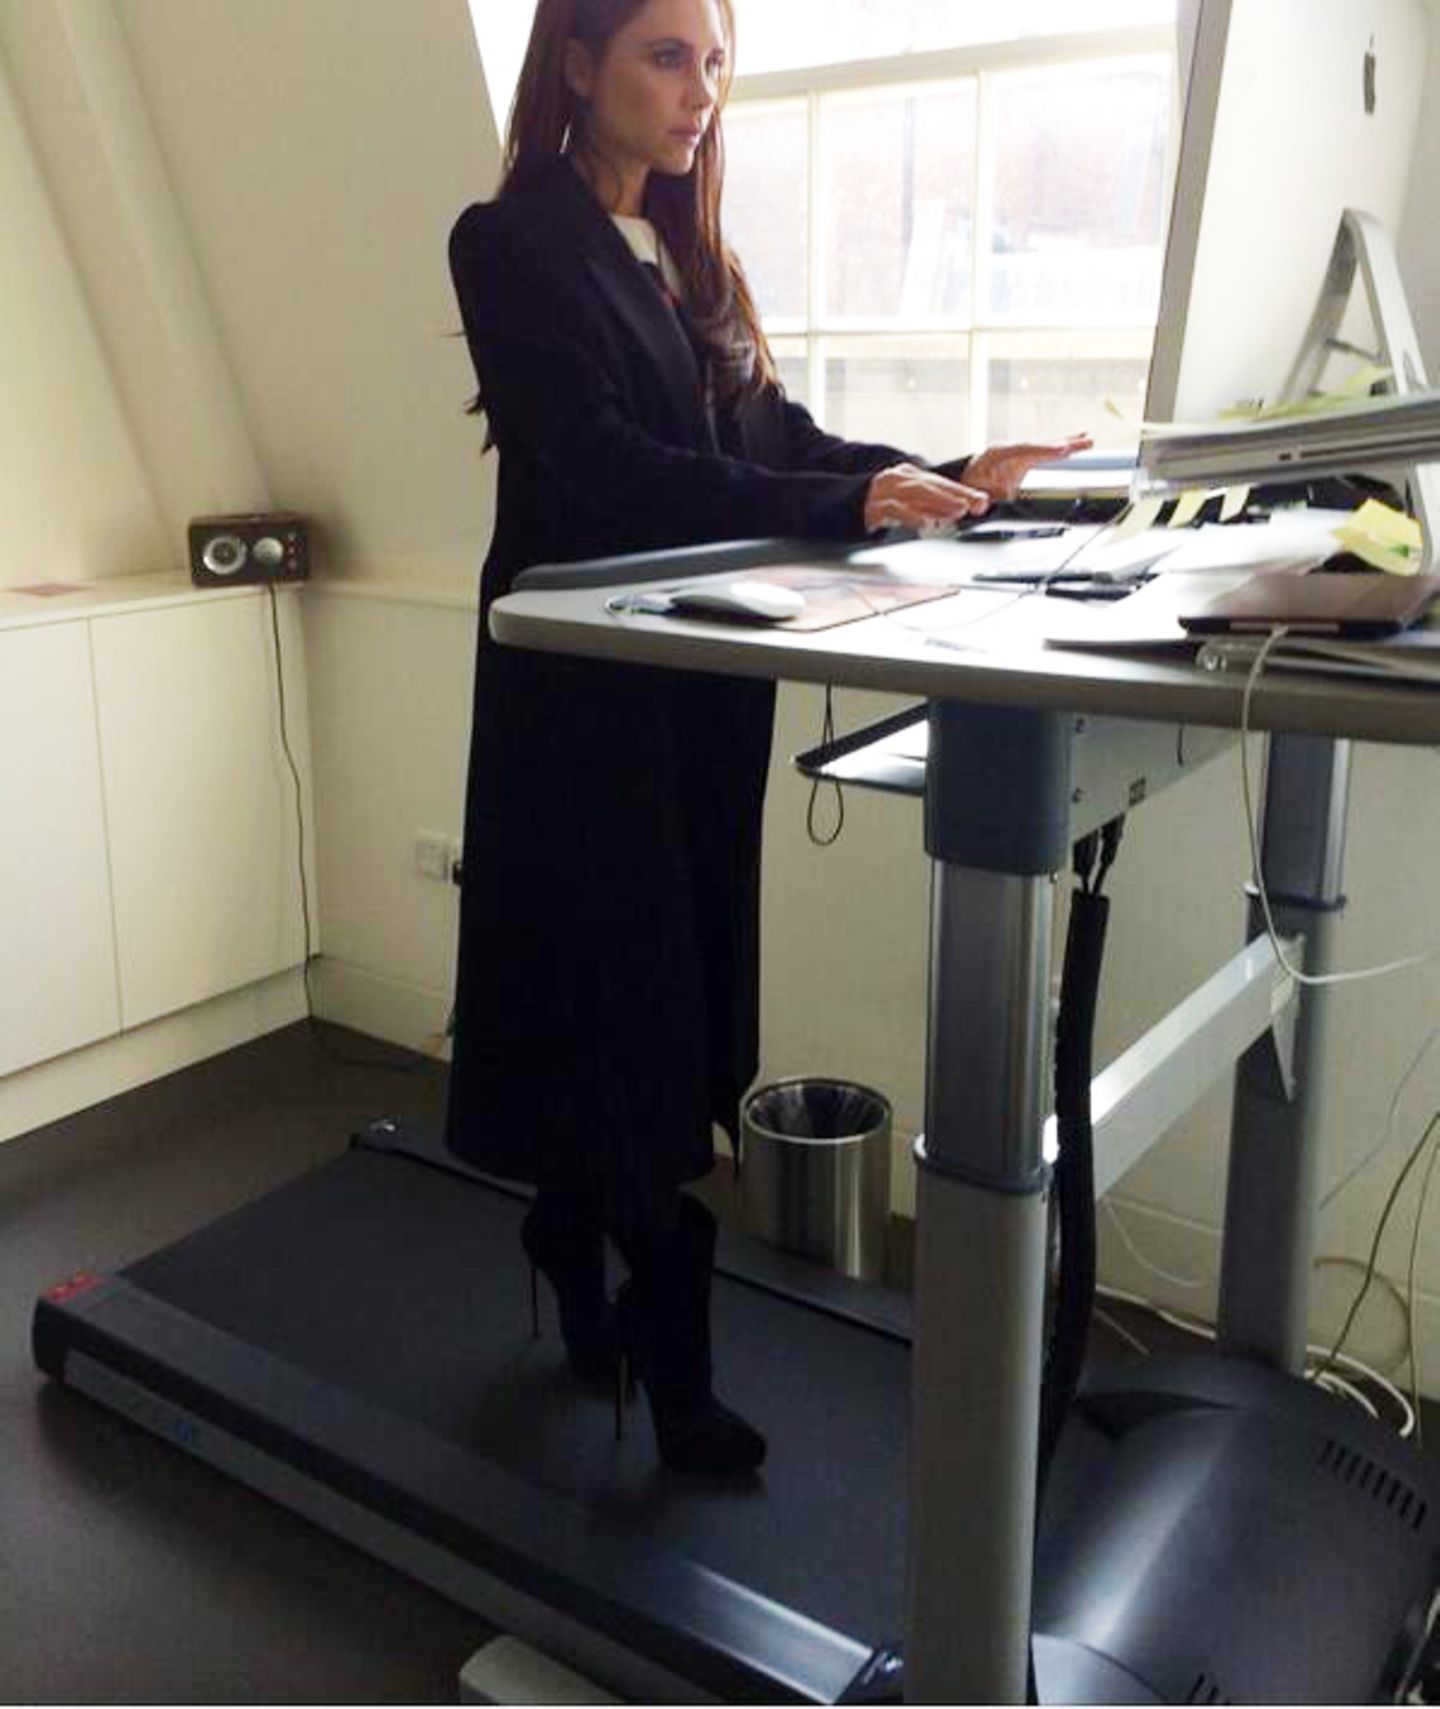 März 2014  Victoria Beckham ist ganz begeistert von einem Schreibtisch mit integriertem Laufband. "Jedes Büro sollte so etwas haben, Sport und Arbeiten gleichzeitig! Genial!", schreibt sie zu diesem Bild.